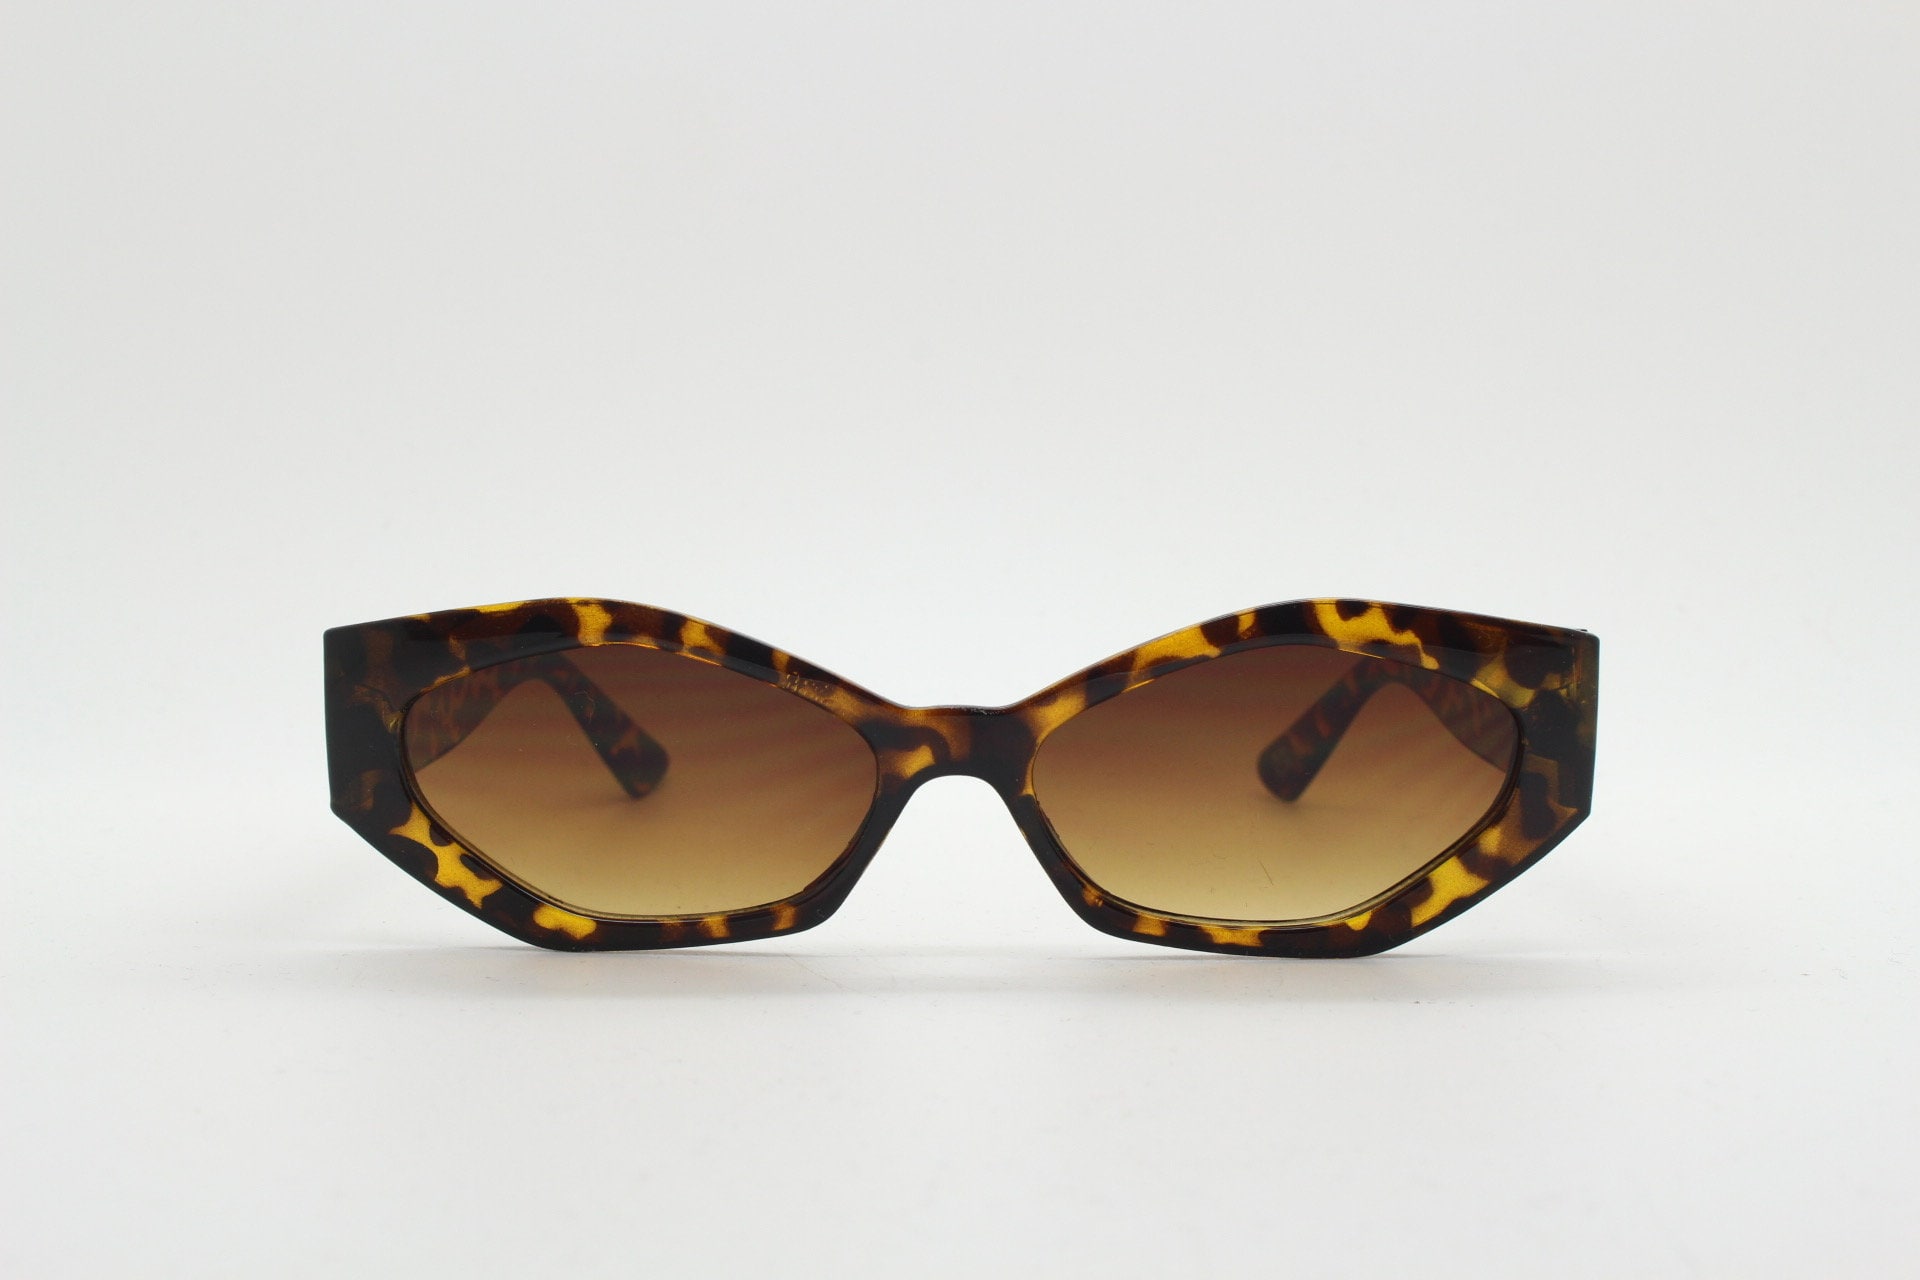 Tortoiseshell Gold Edge Designer Inspired Cat Eye Sunglasses